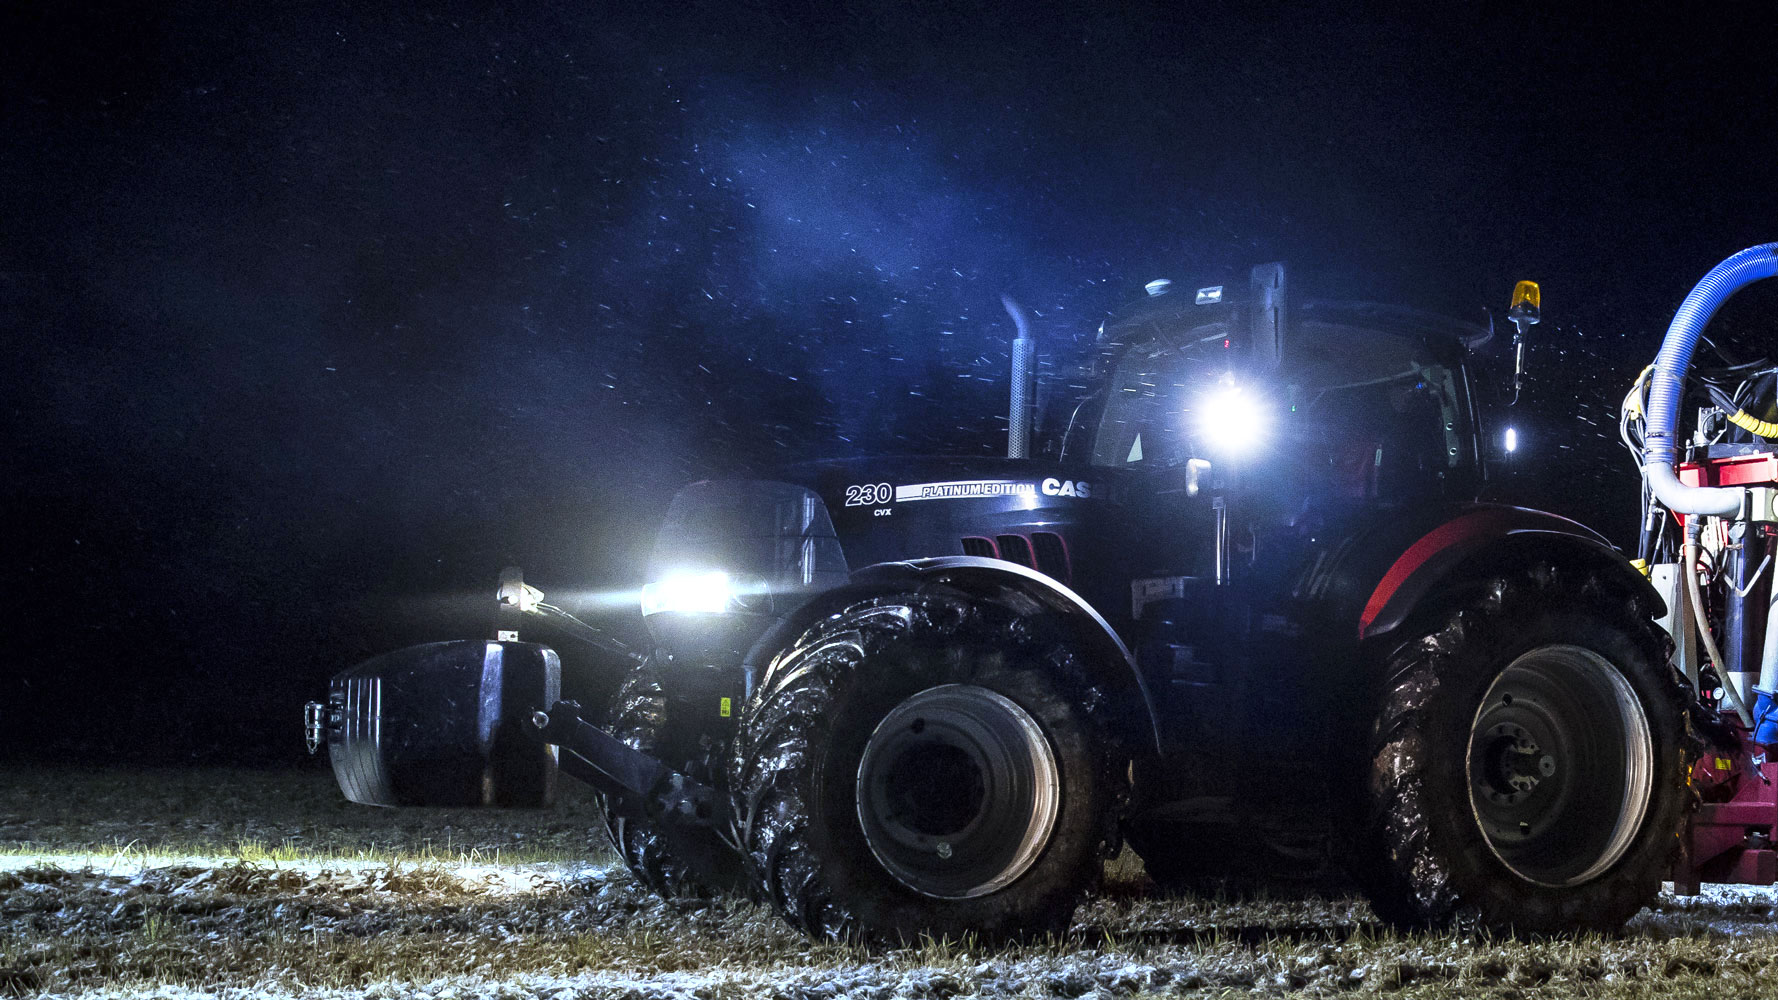 Joli lit en MDF en forme de Tracteur avec éclairage LED dans les phares